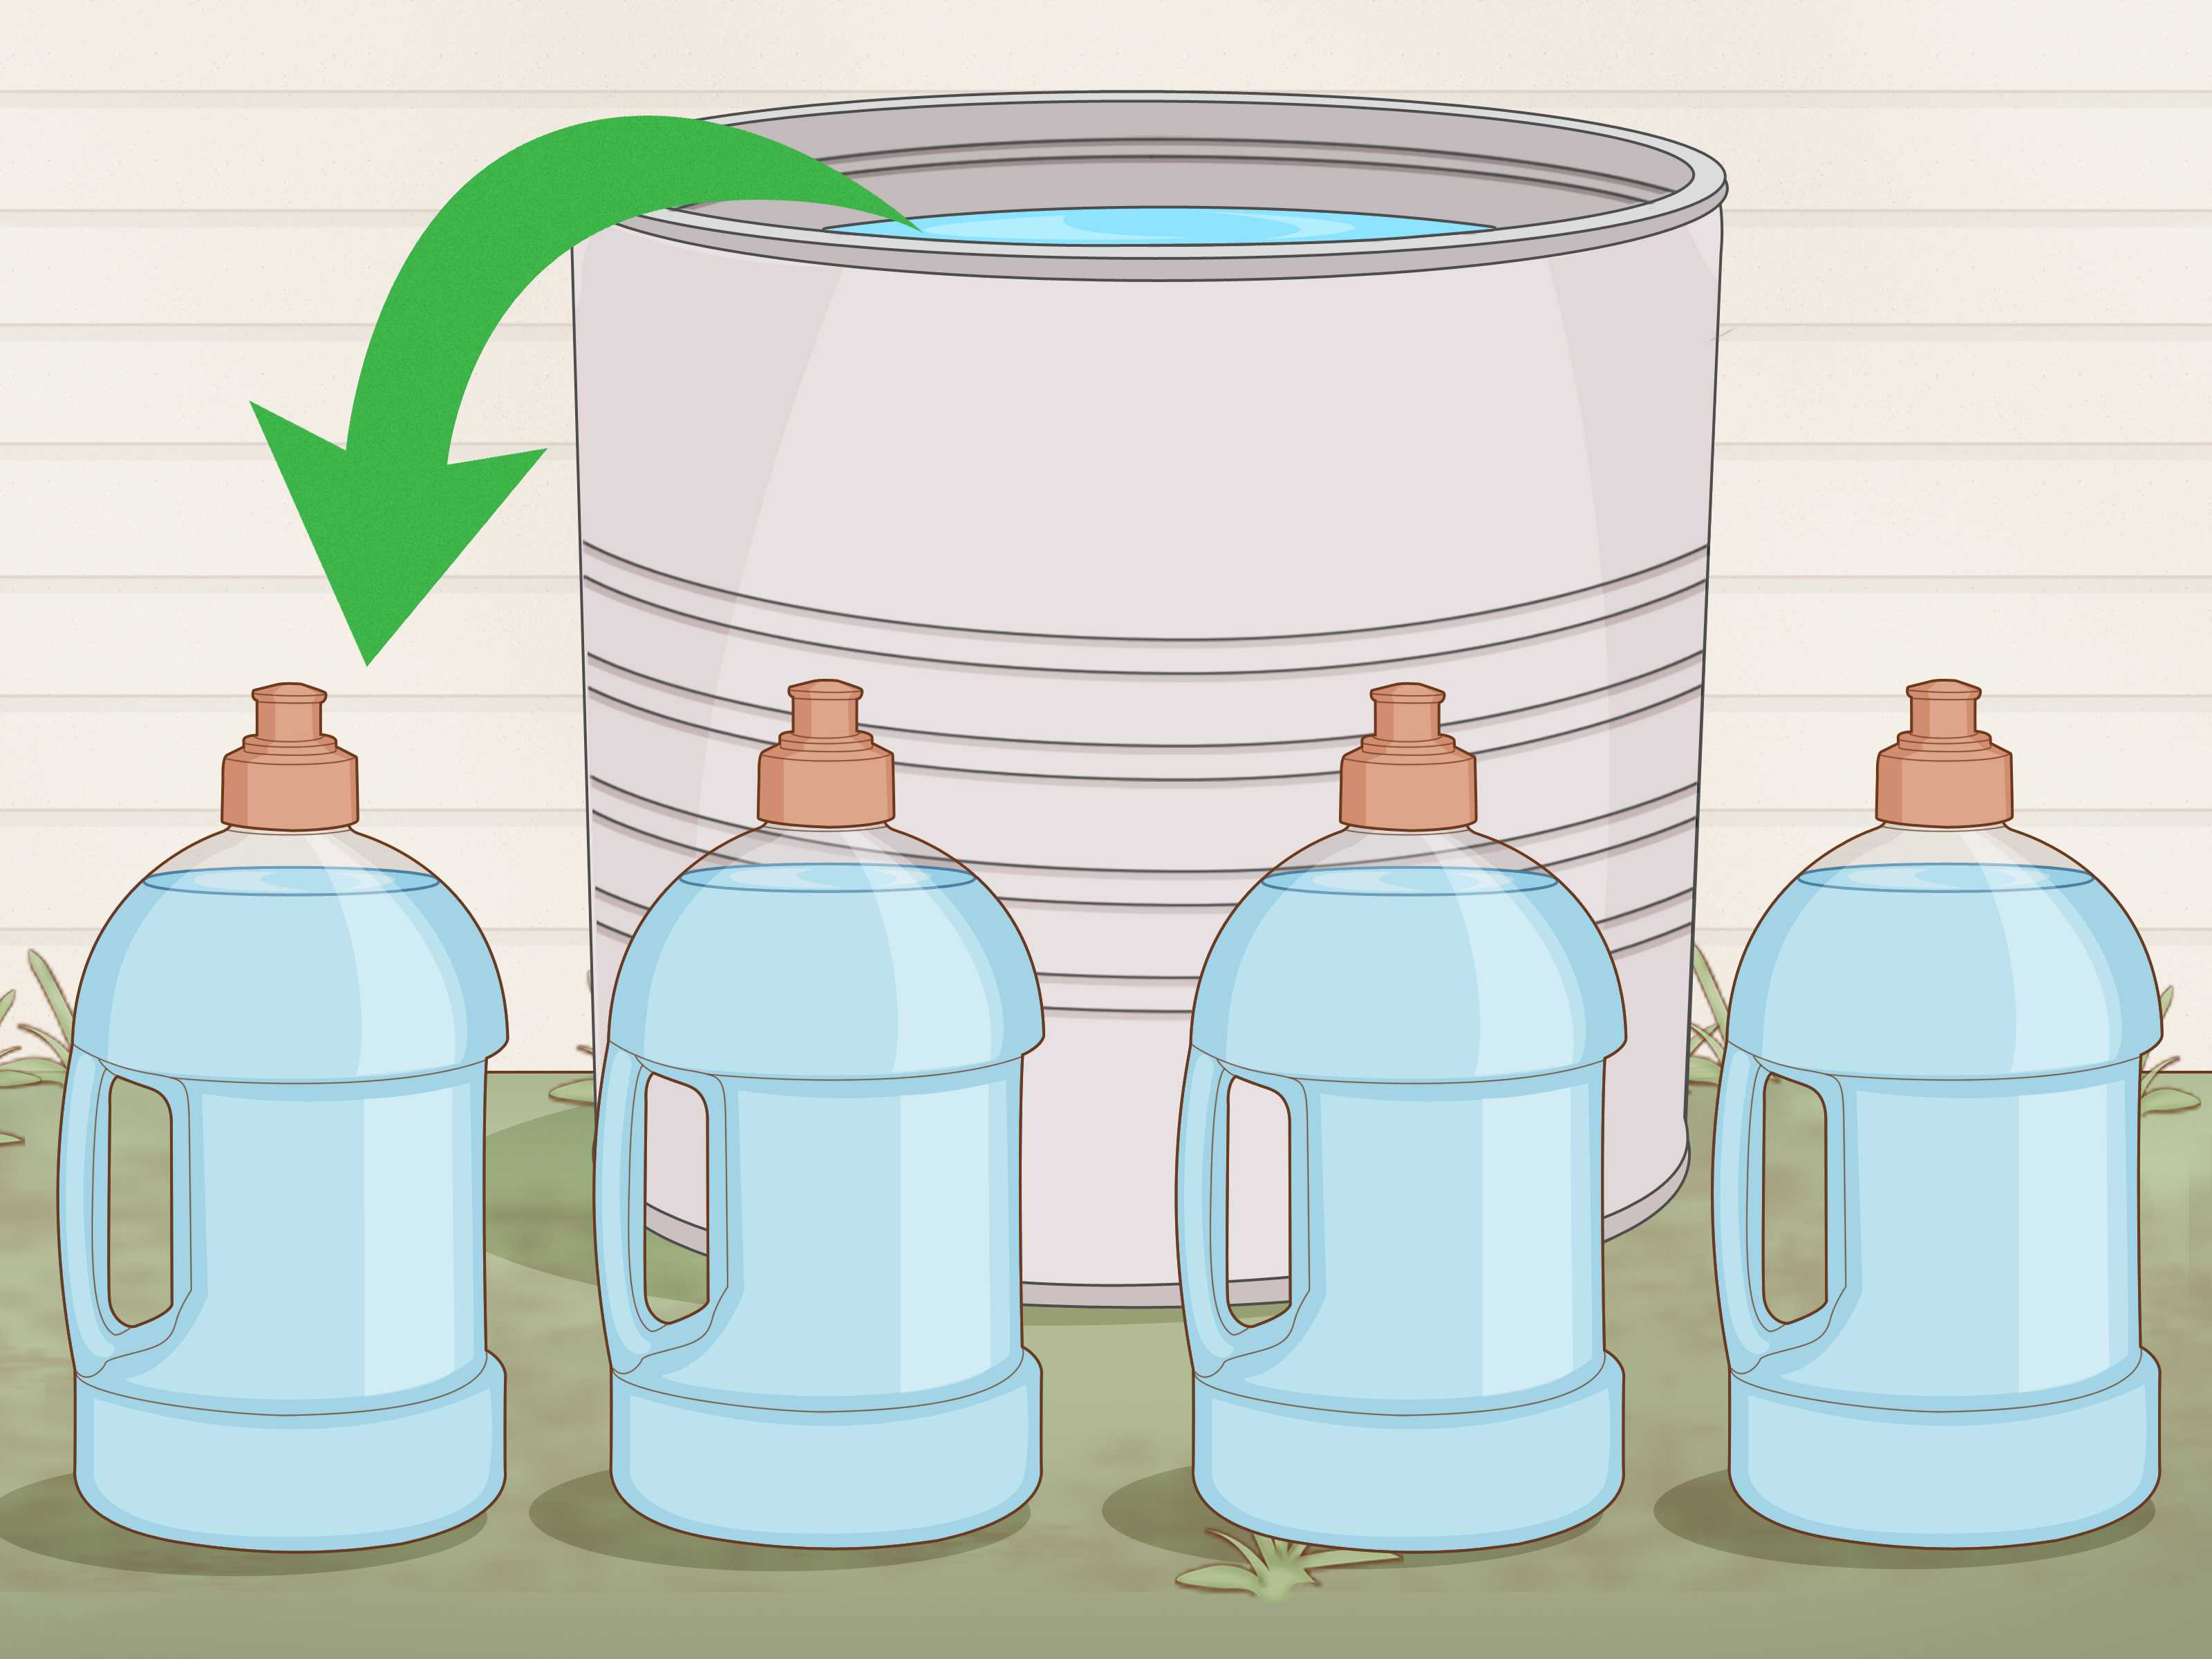 Как получить дистиллированную воду в домашних